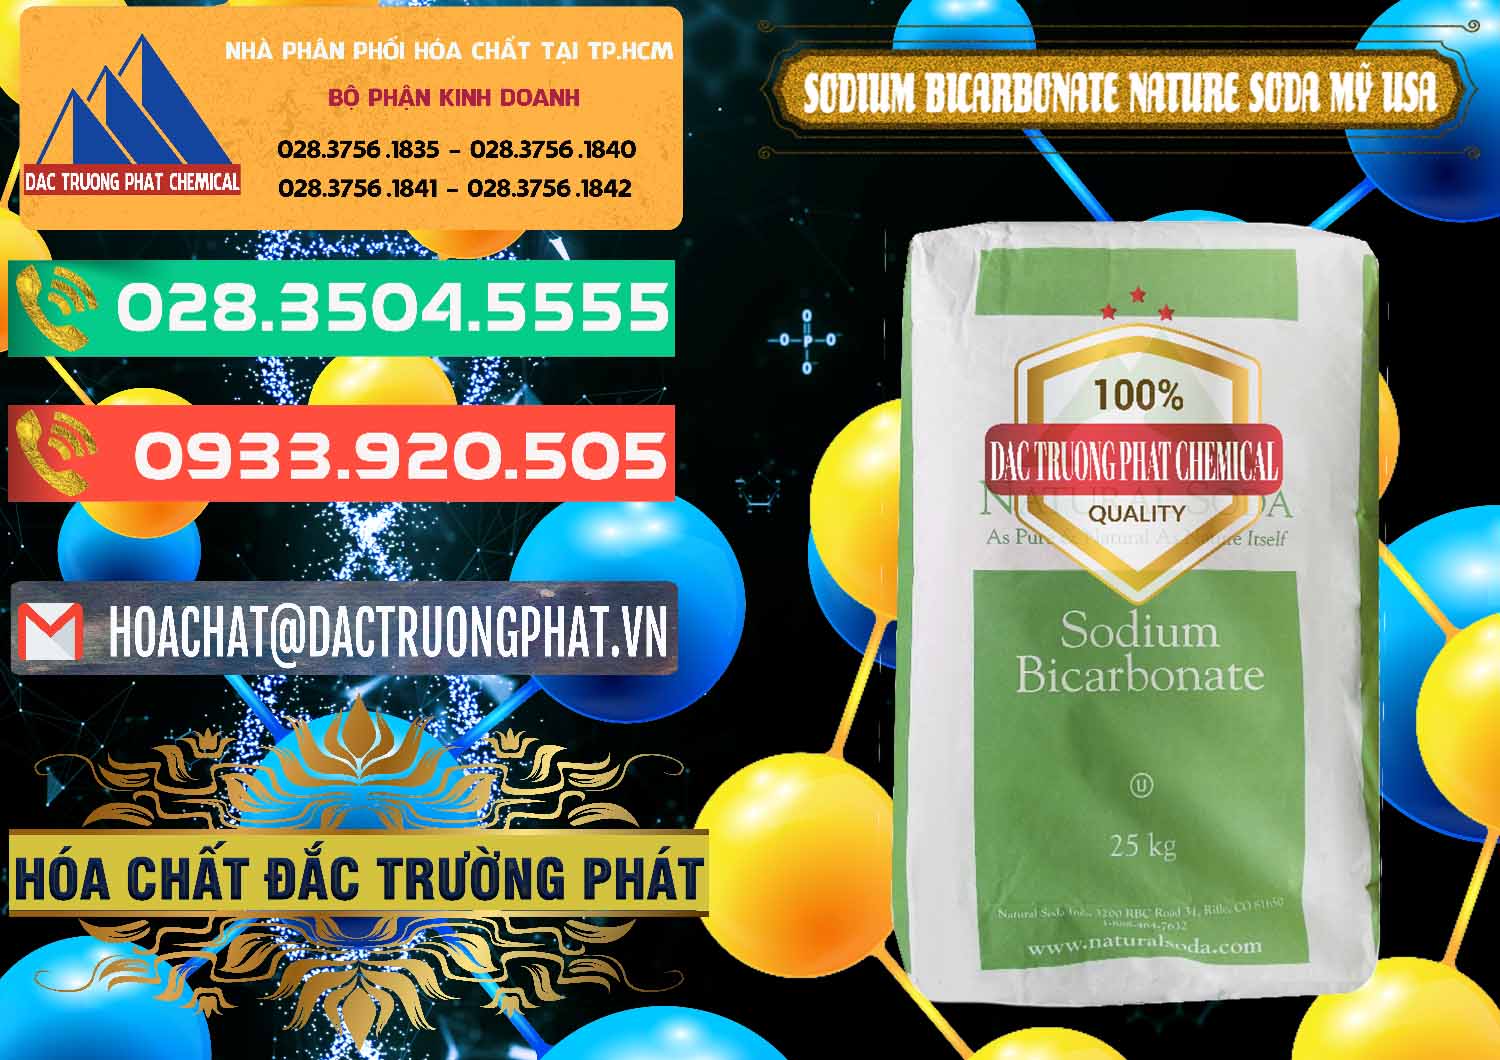 Nơi chuyên cung cấp - bán Sodium Bicarbonate – Bicar NaHCO3 Food Grade Nature Soda Mỹ USA - 0256 - Phân phối ( nhập khẩu ) hóa chất tại TP.HCM - congtyhoachat.com.vn